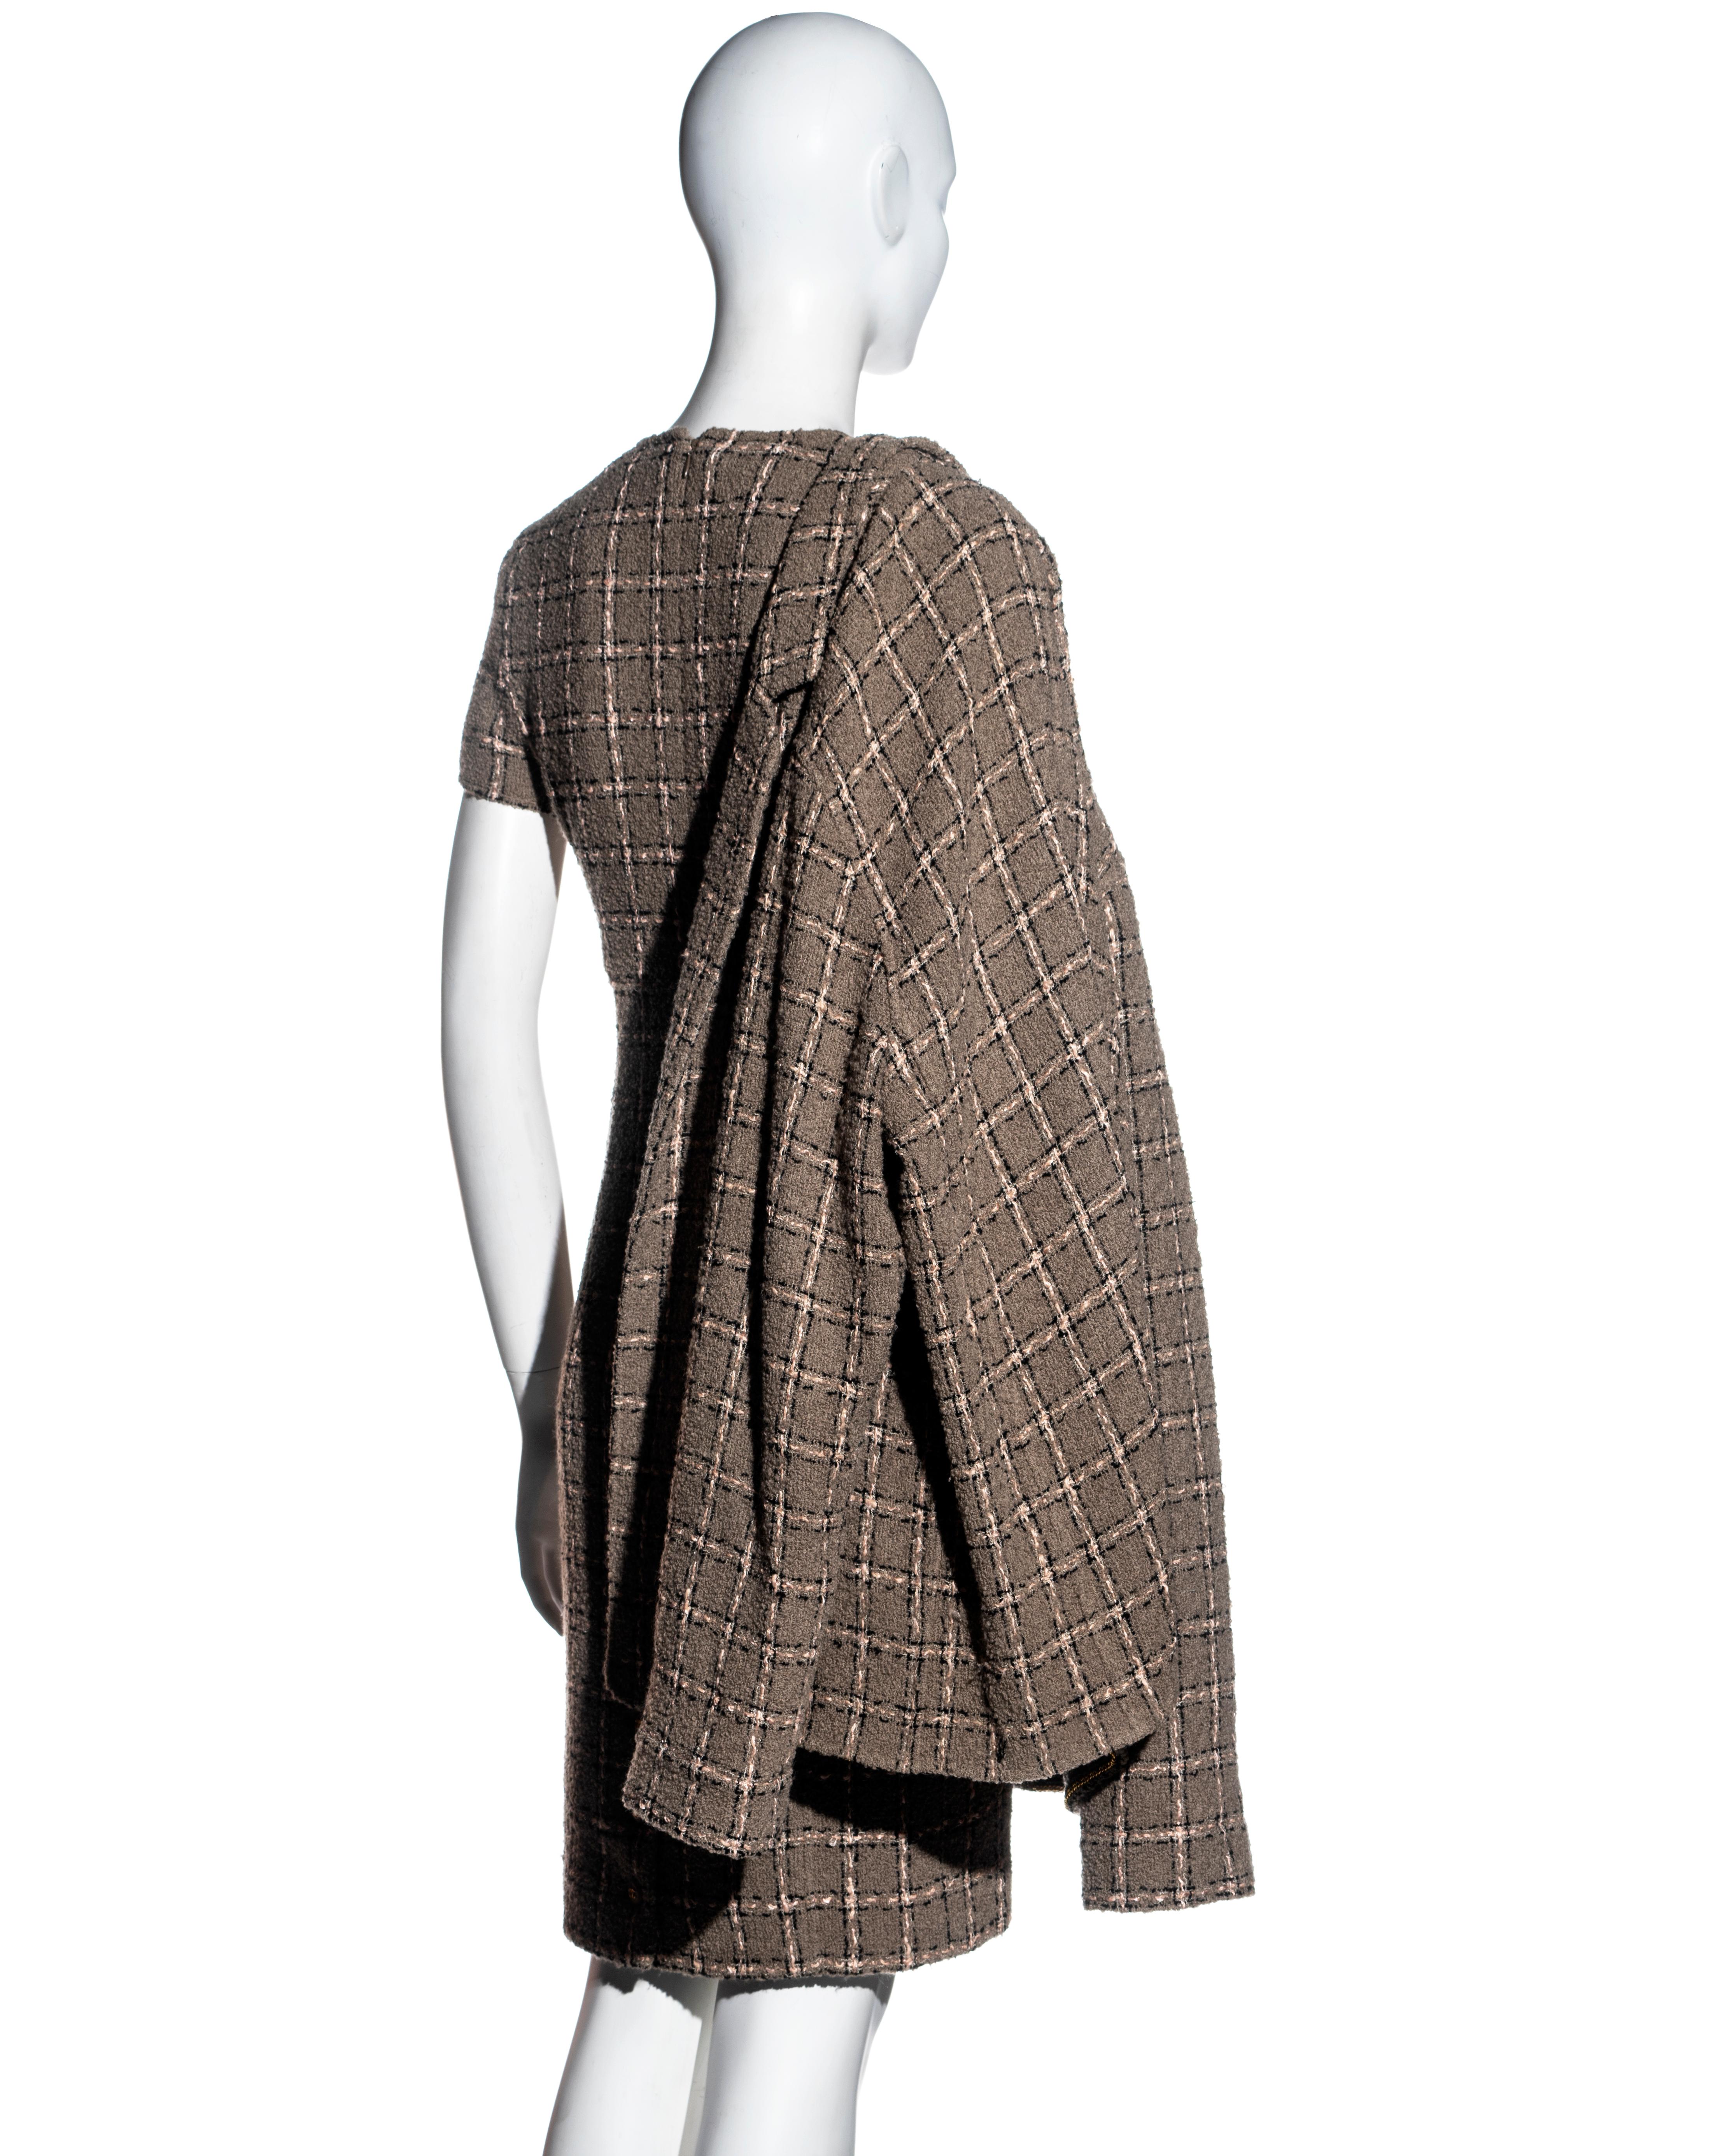 Ensemble robe et veste en laine bouclée taupe à carreaux, Chanel by Karl Lagerfeld, fw 1995 en vente 7